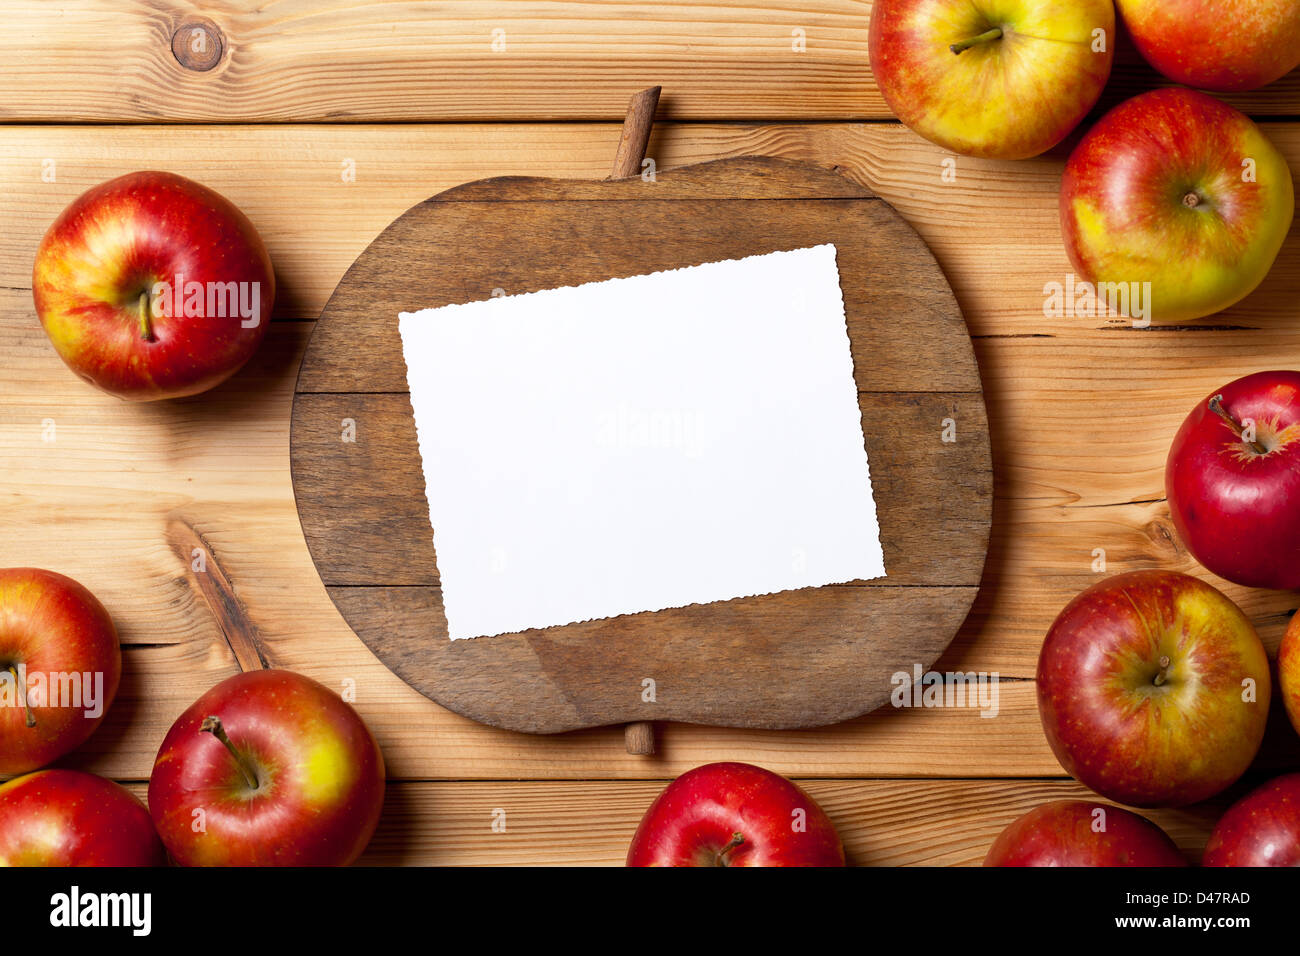 Composición manzanas frescas sobre fondo de madera con una habitación vacía para texto Foto de stock